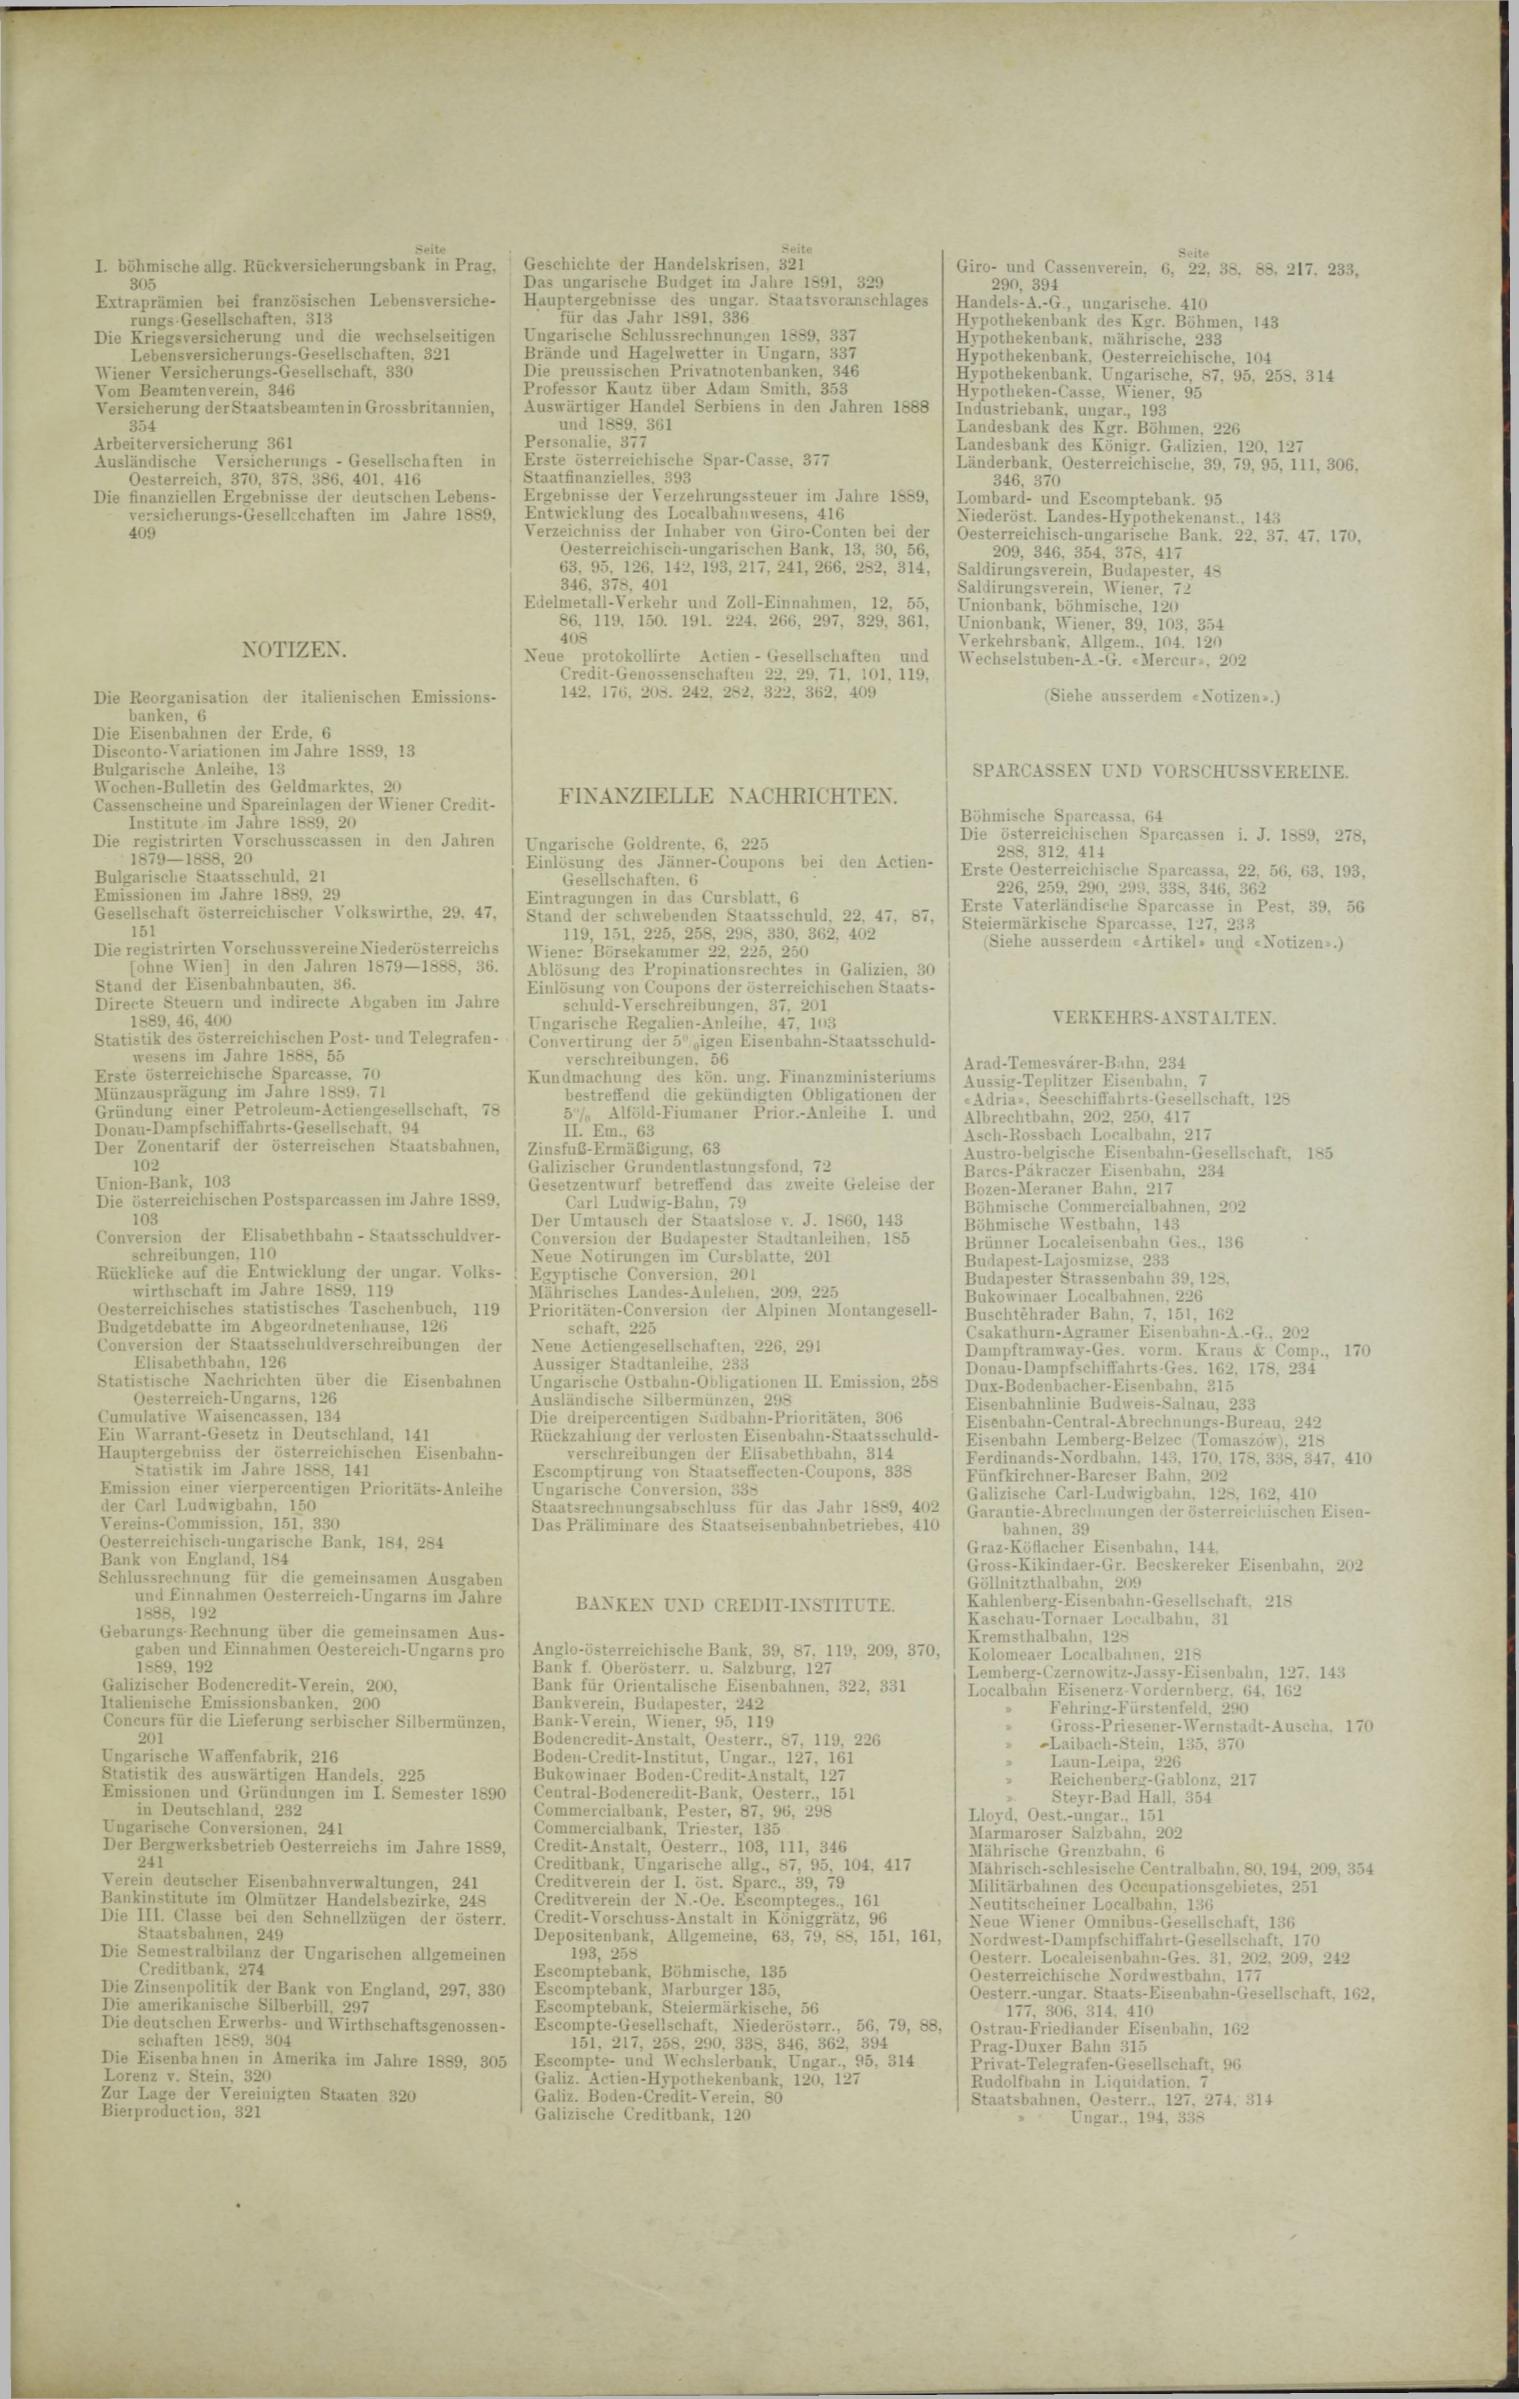 Der Tresor 19.06.1890 - Seite 11